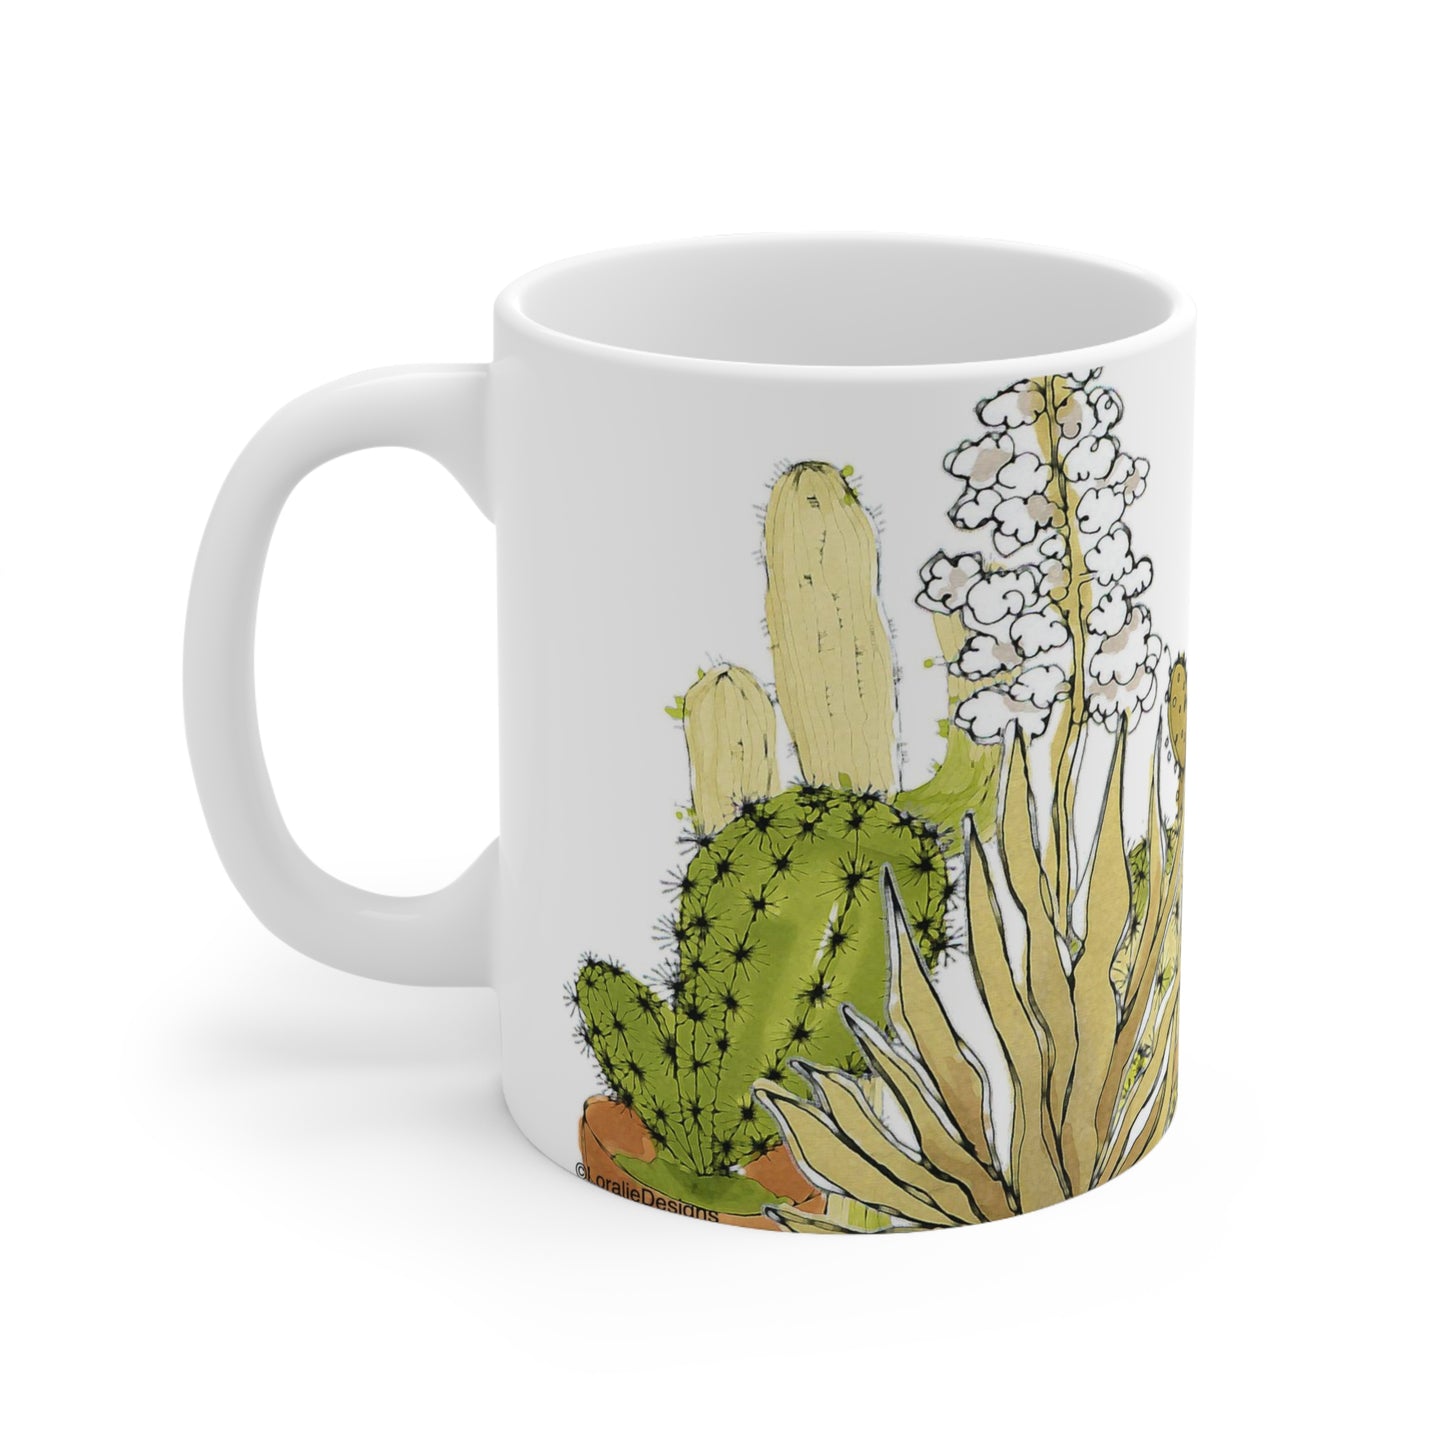 Crazy Cactus Mug